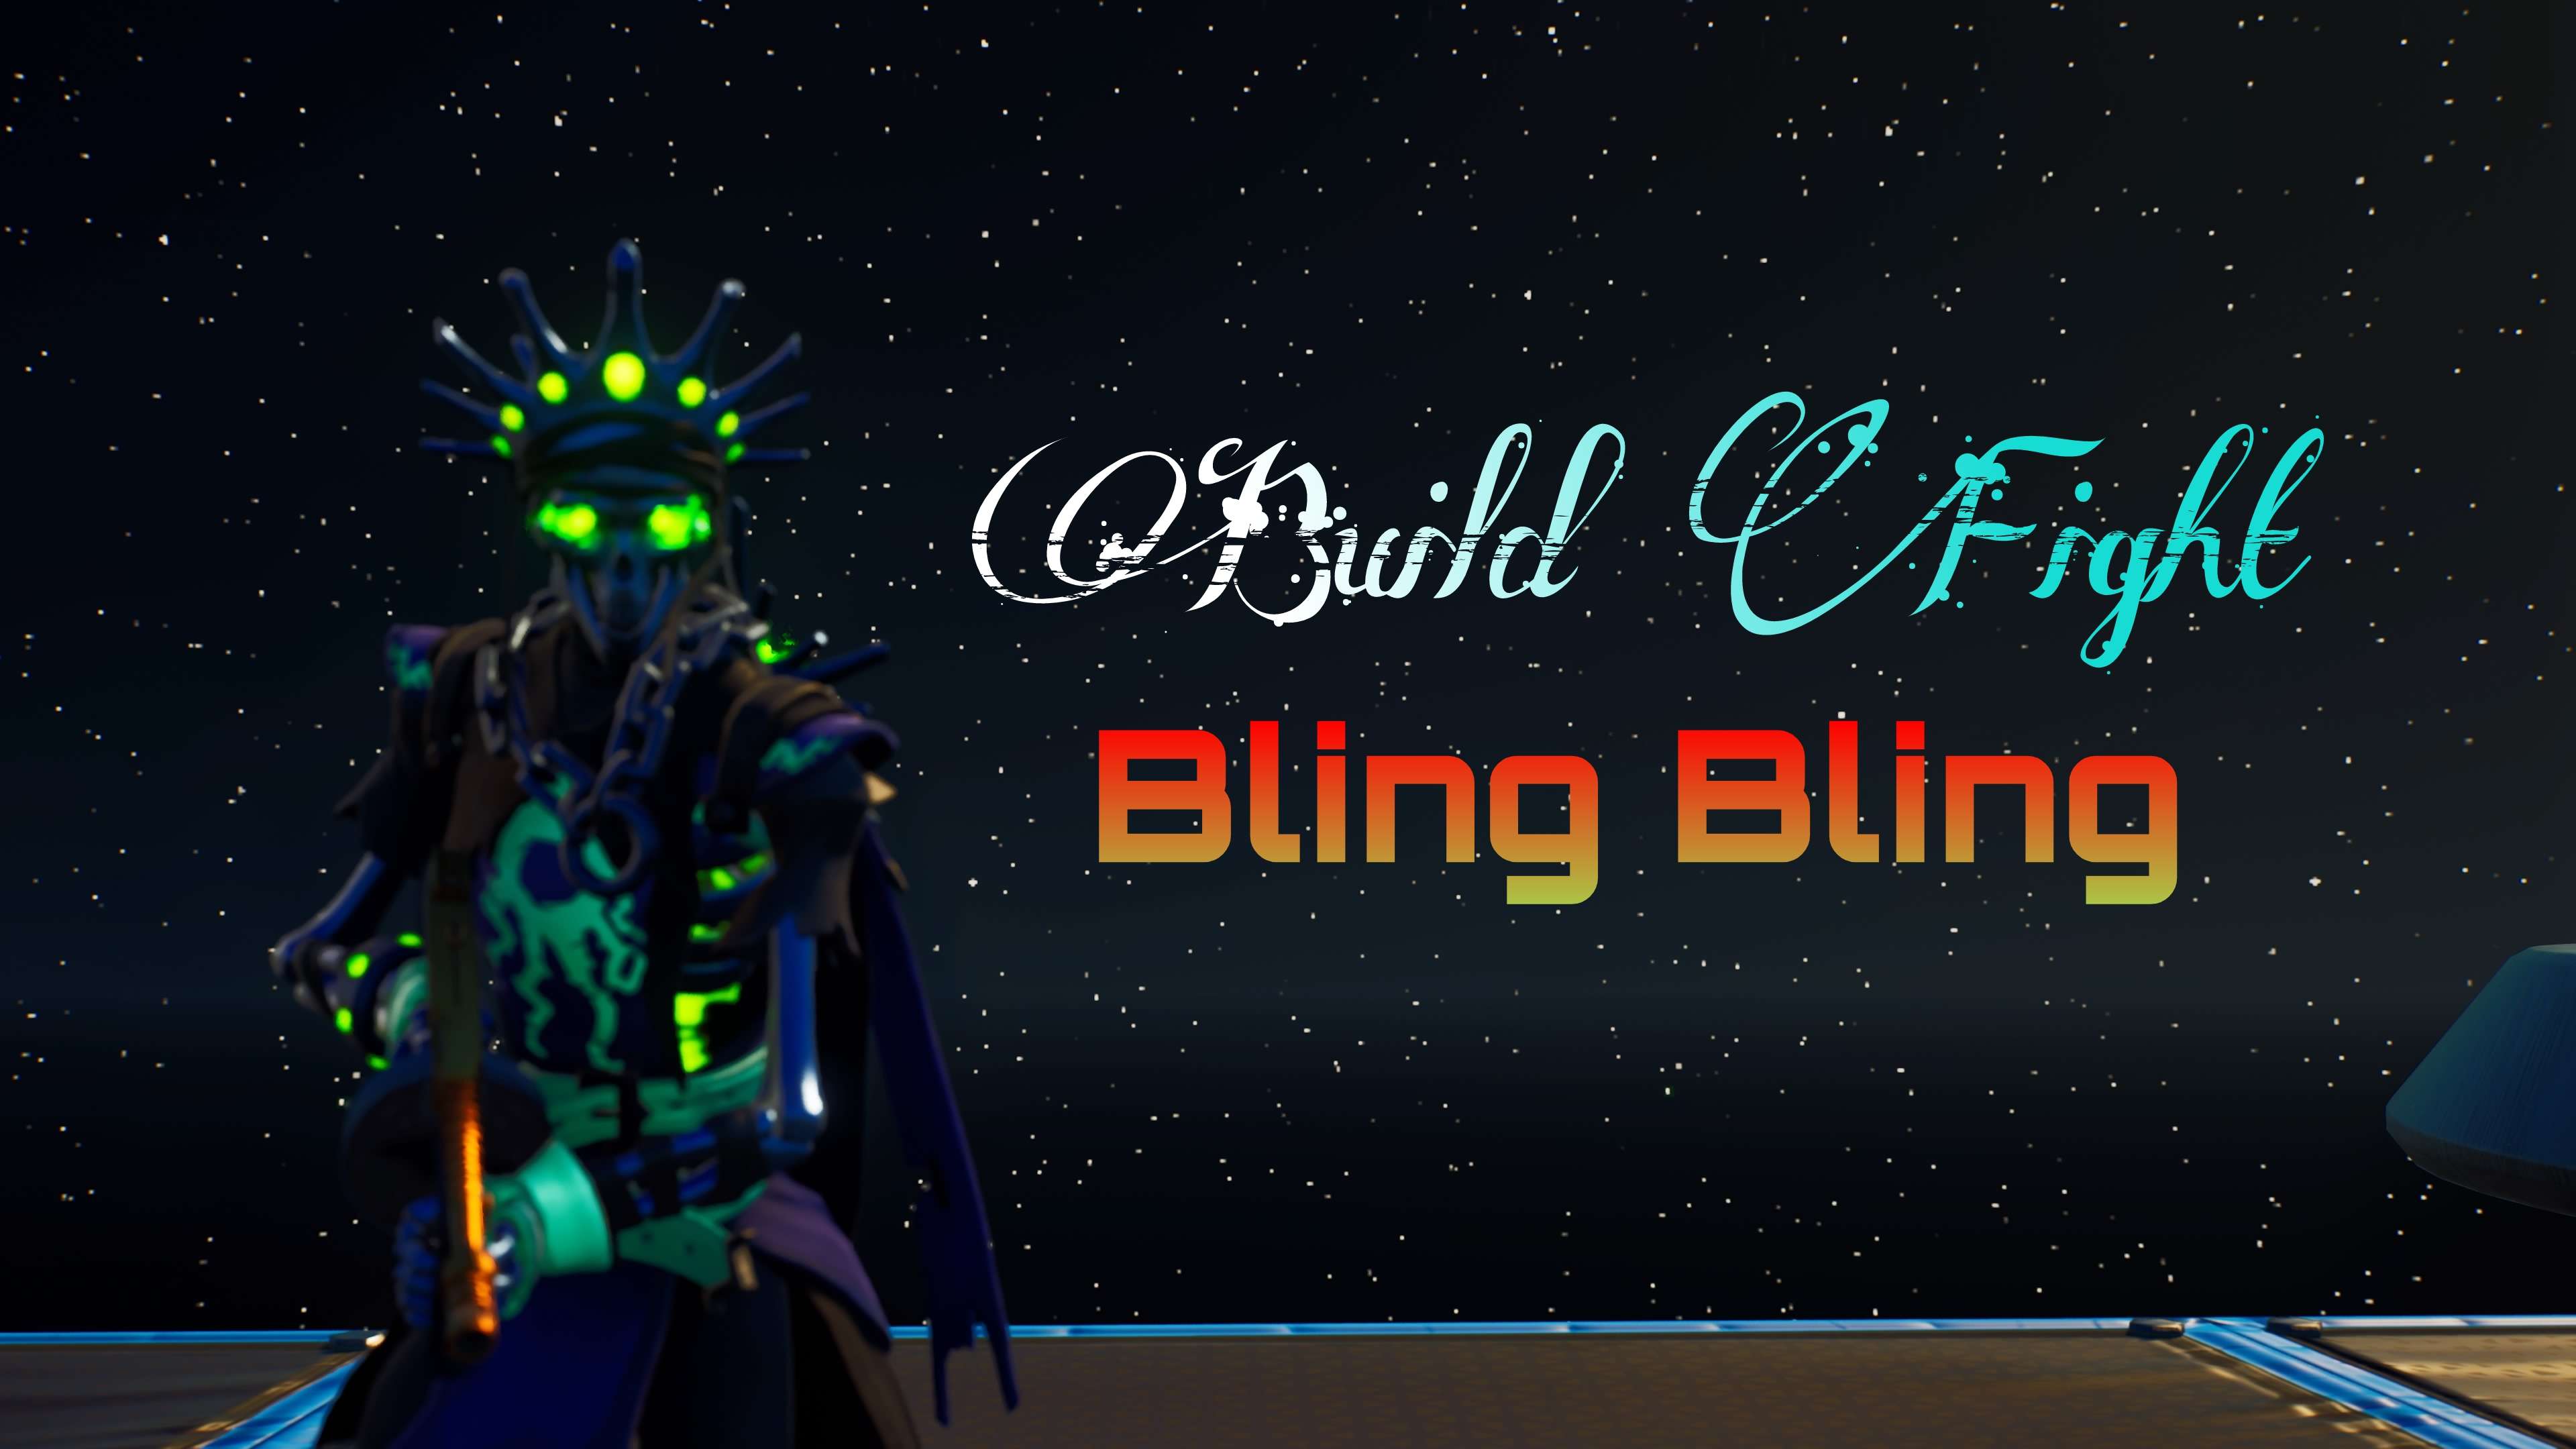 BUILD FIGHT BLING-BLING